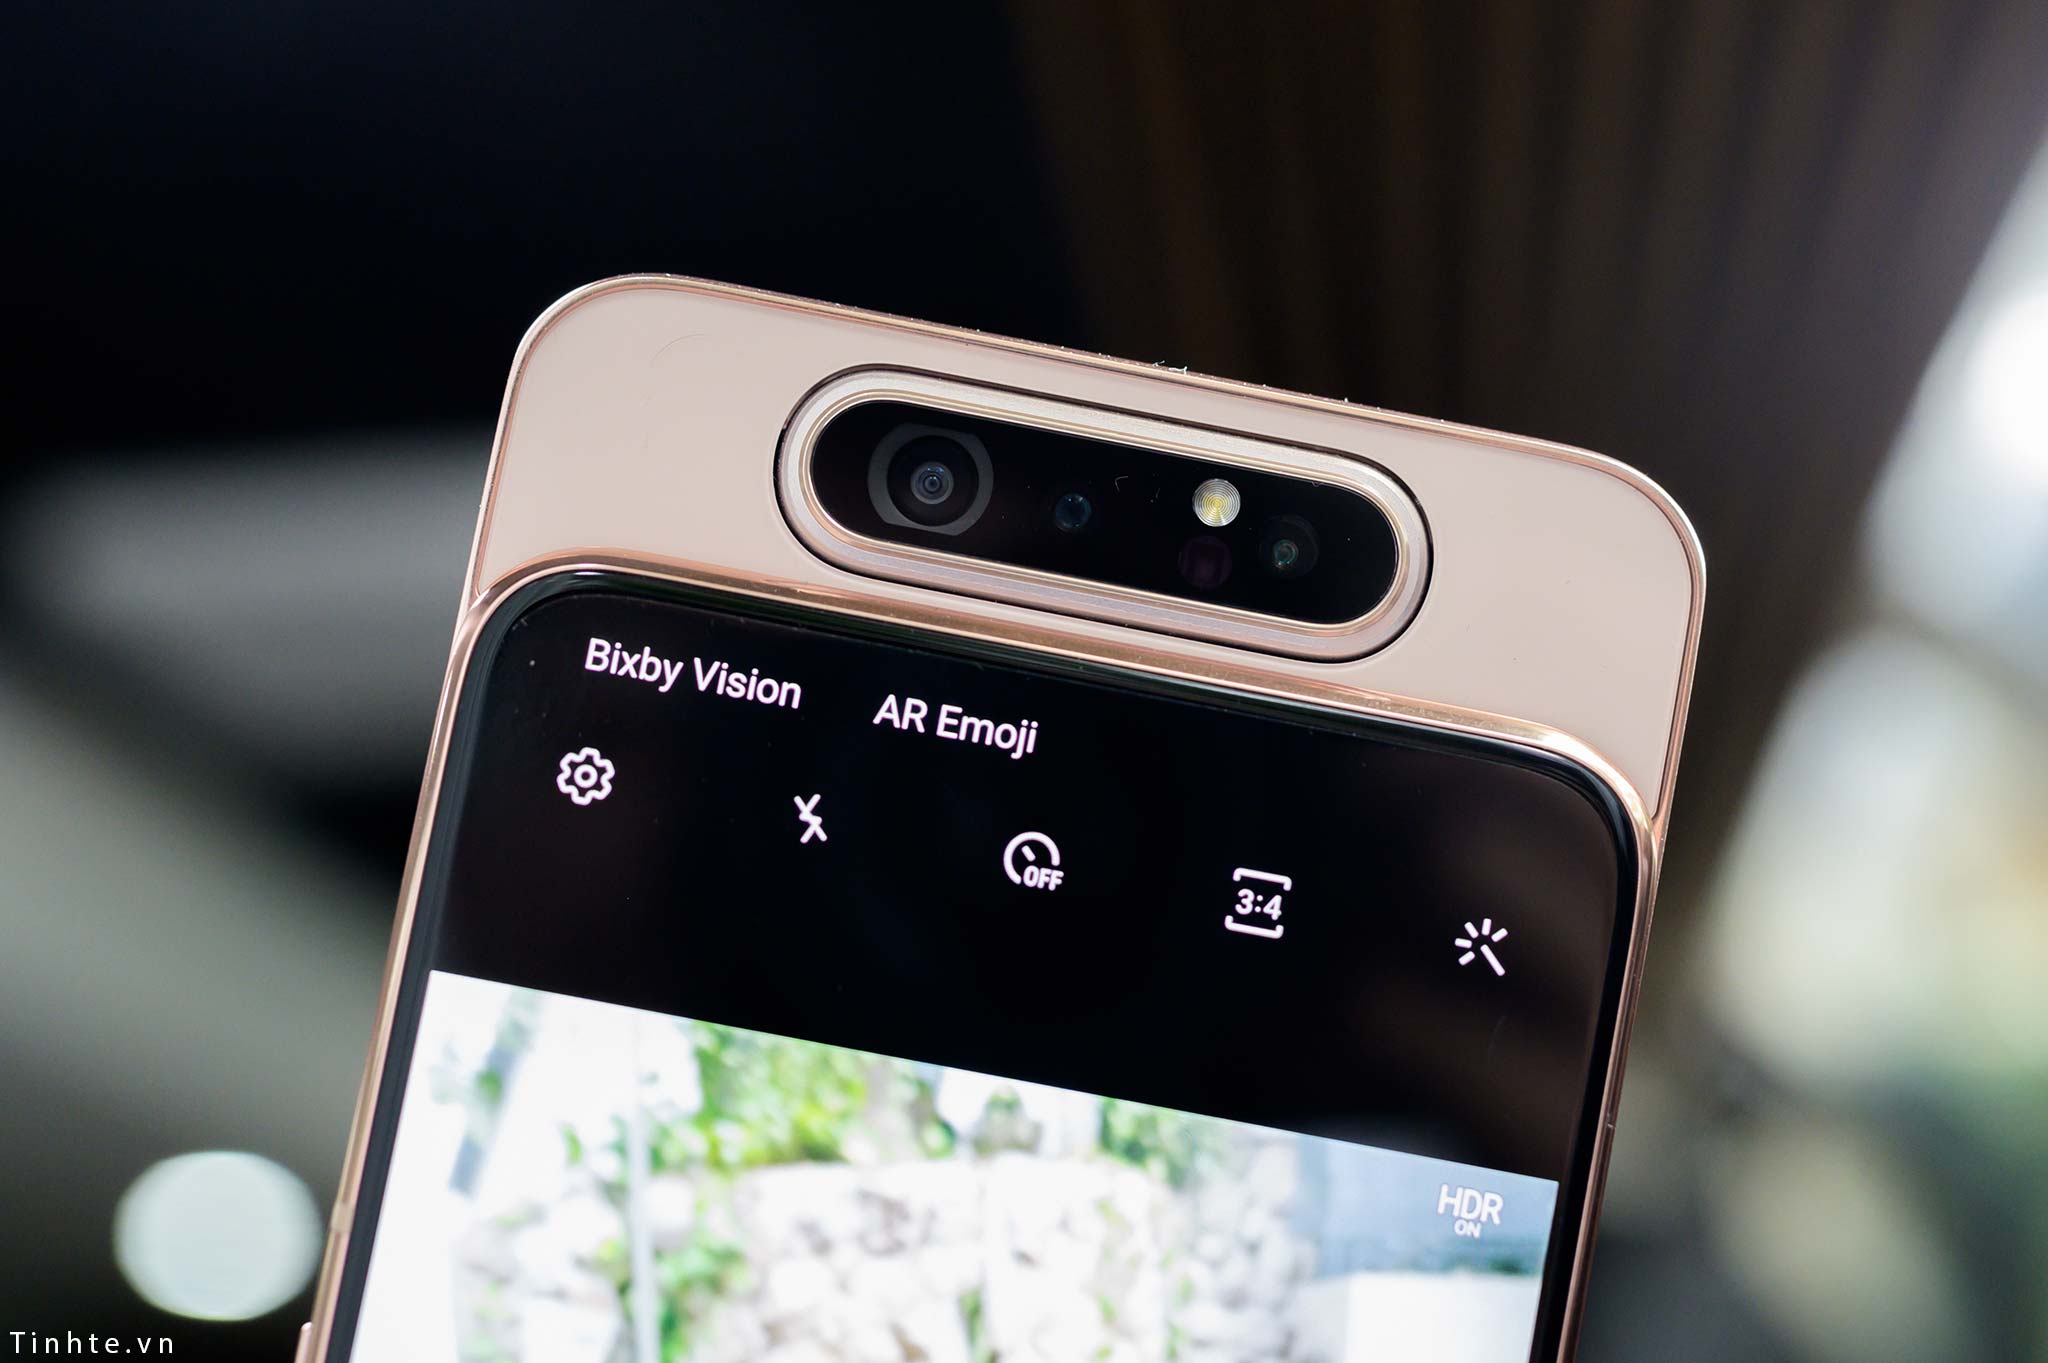 Hình chụp thử Samsung A80: lấy nét nhanh, màu sắc khá, ống góc rộng chưa tốt